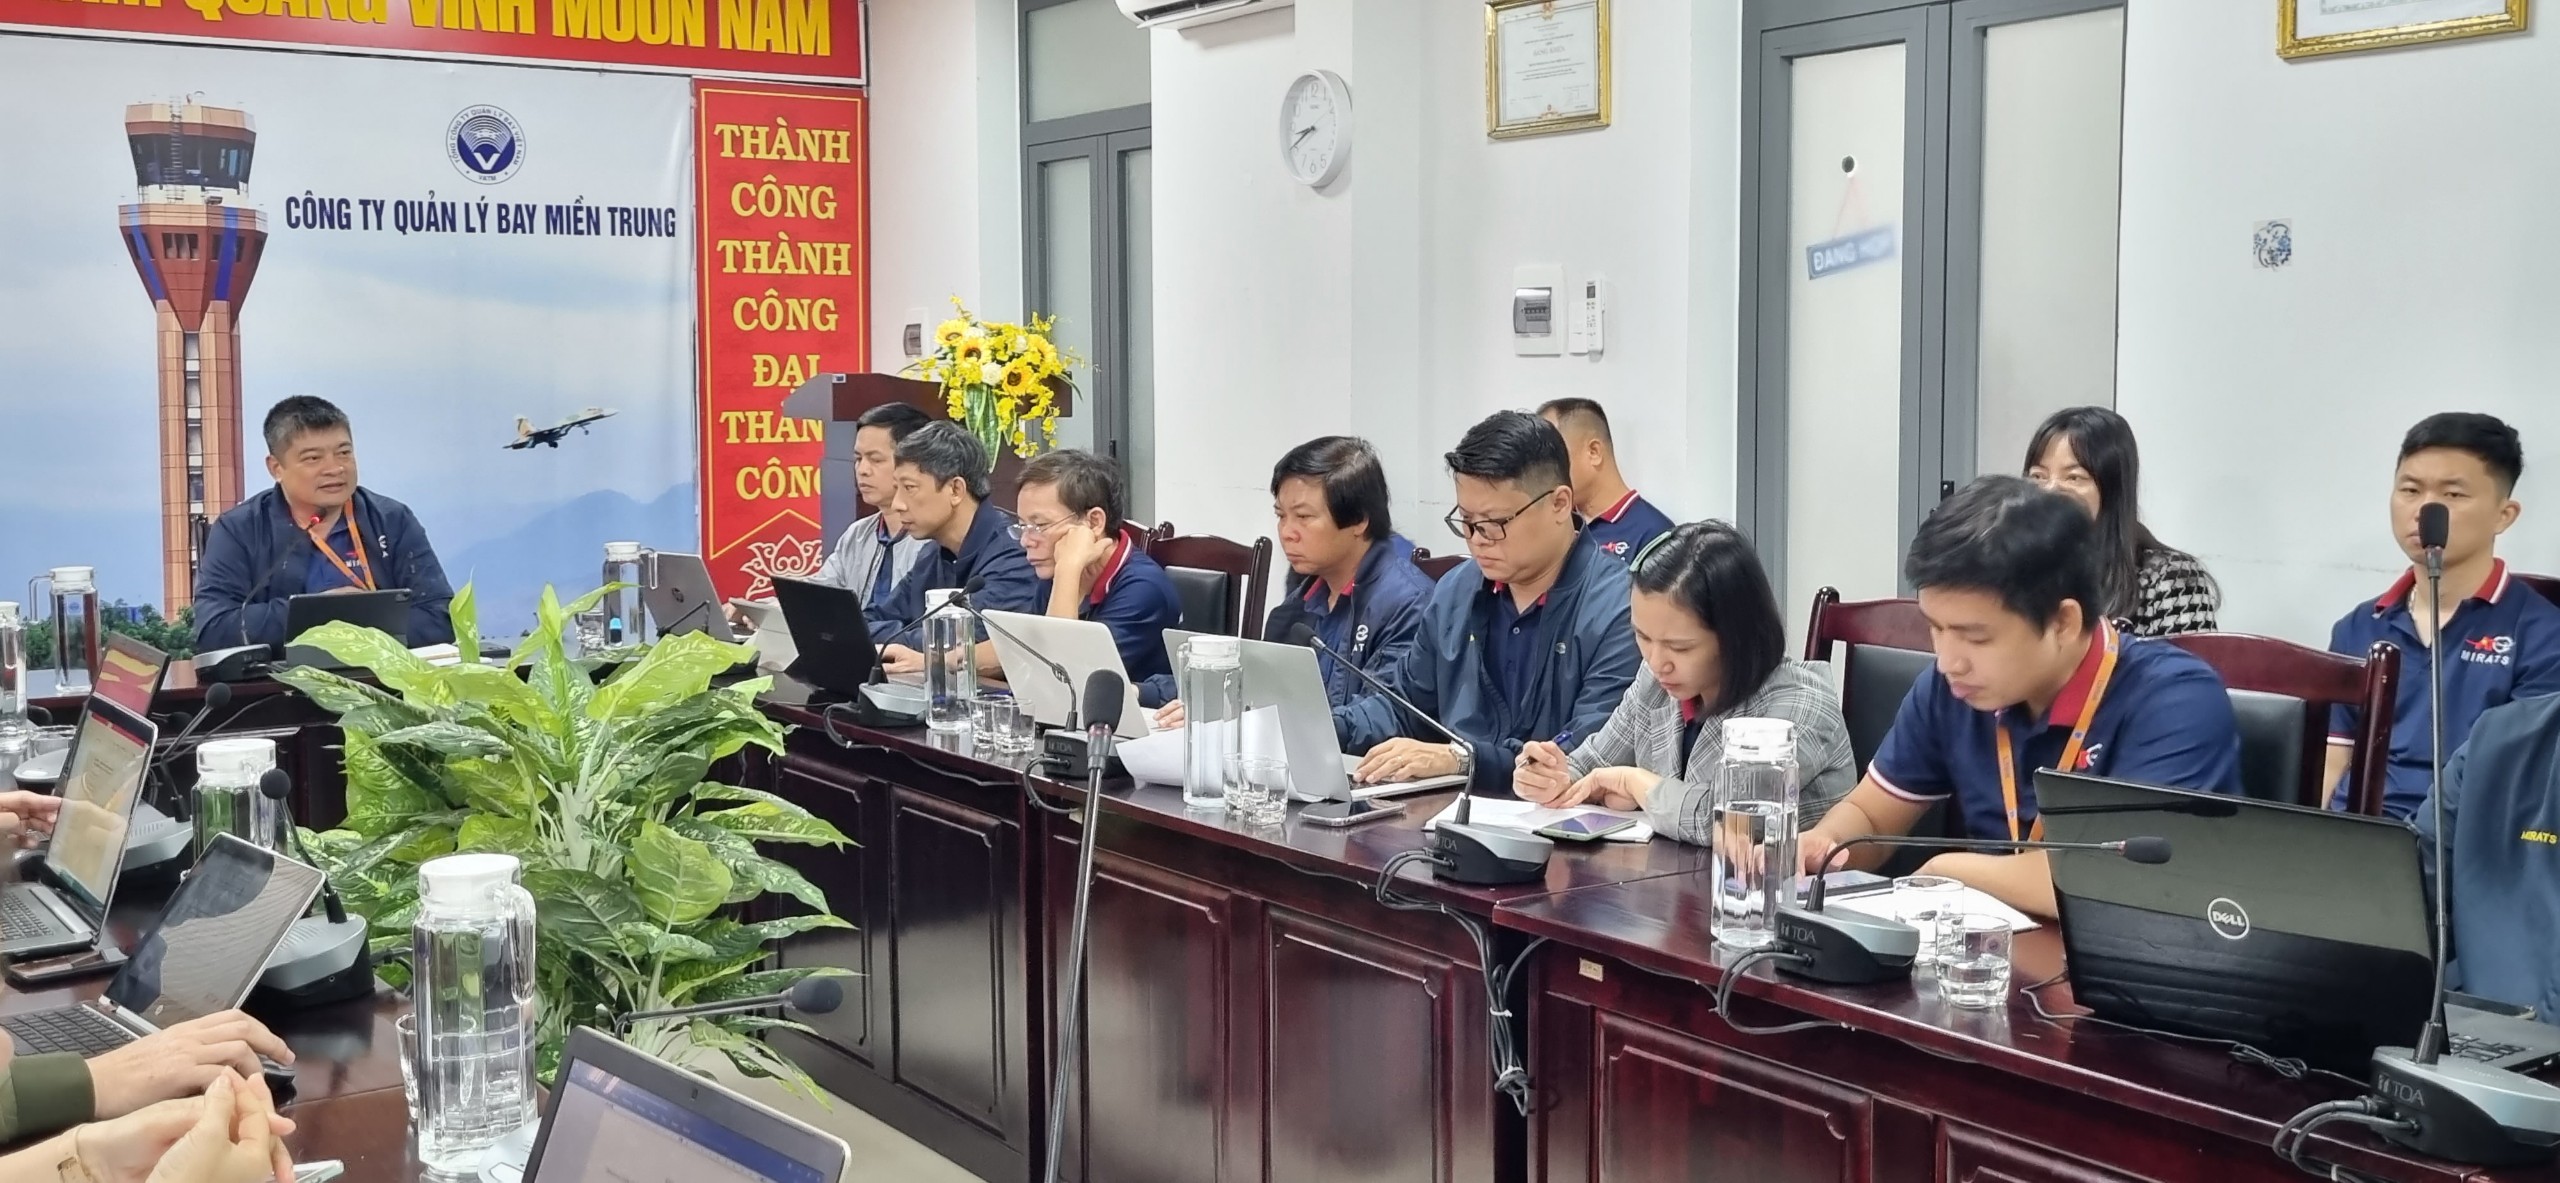 Công ty Quản lý bay miền Trung tổ chức Hội nghị trao đổi về nghiệp vụ hóa đơn điện tử